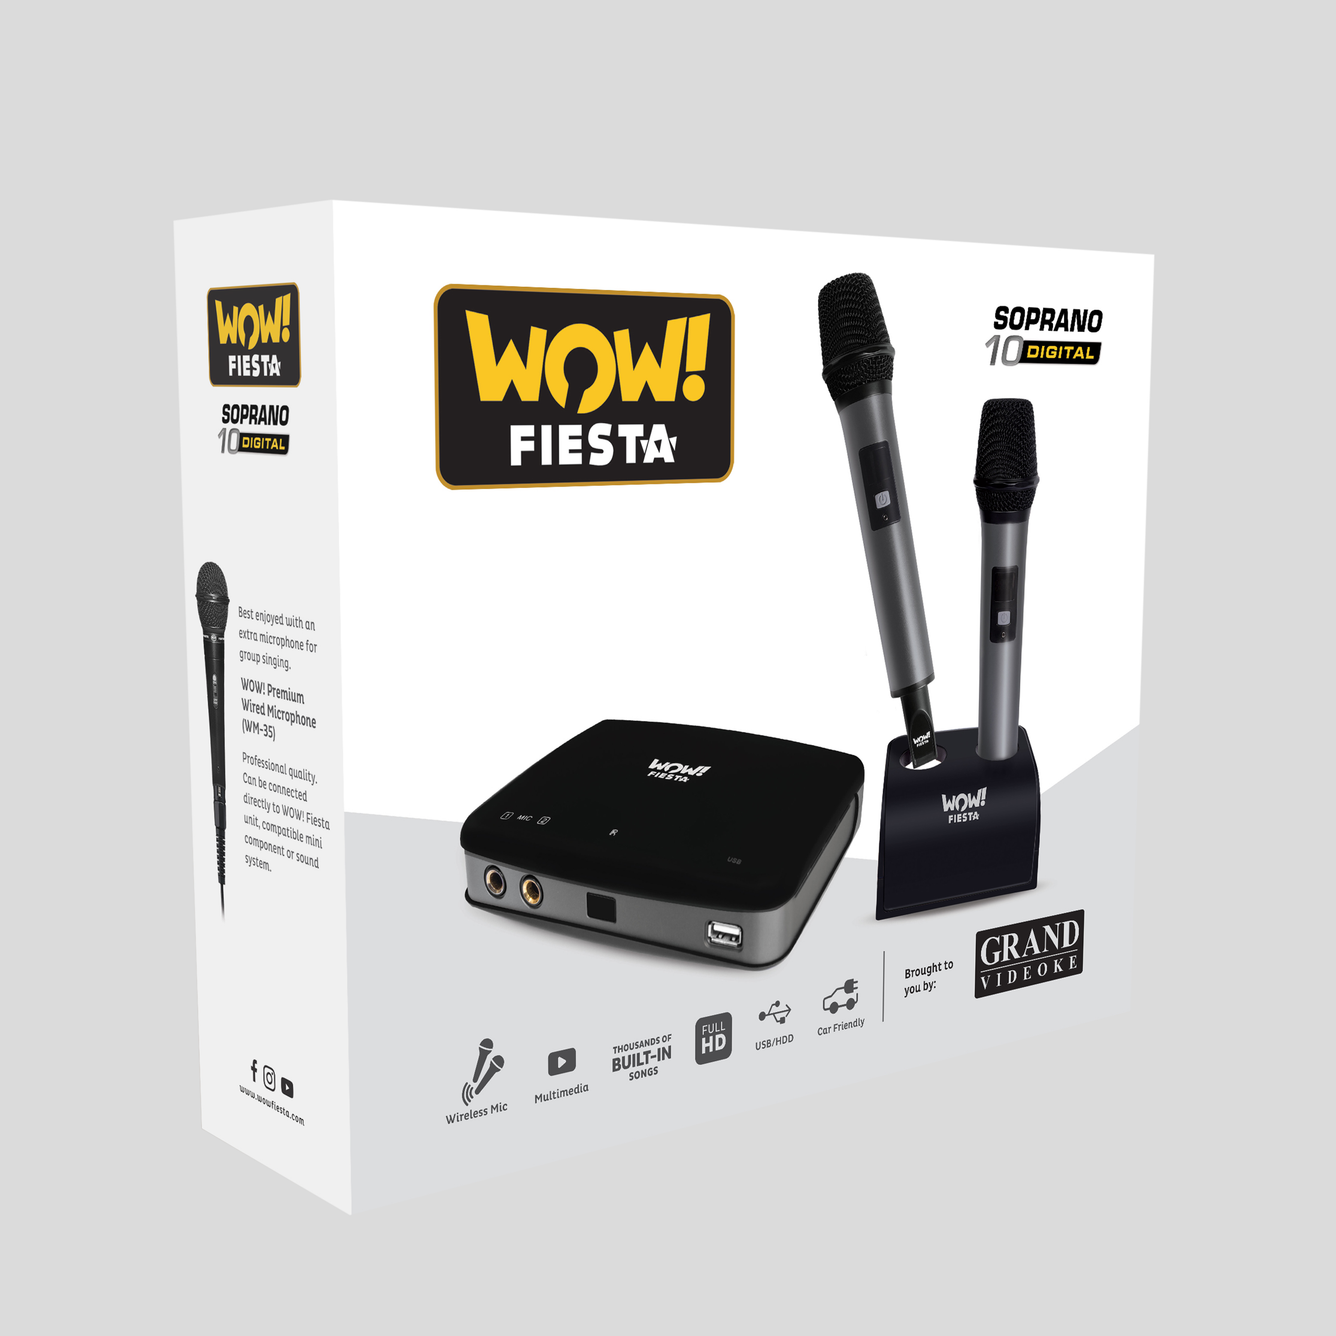 WOW! Fiesta Soprano 10 Digital (WF-270HD) - 2x Wireless Mics